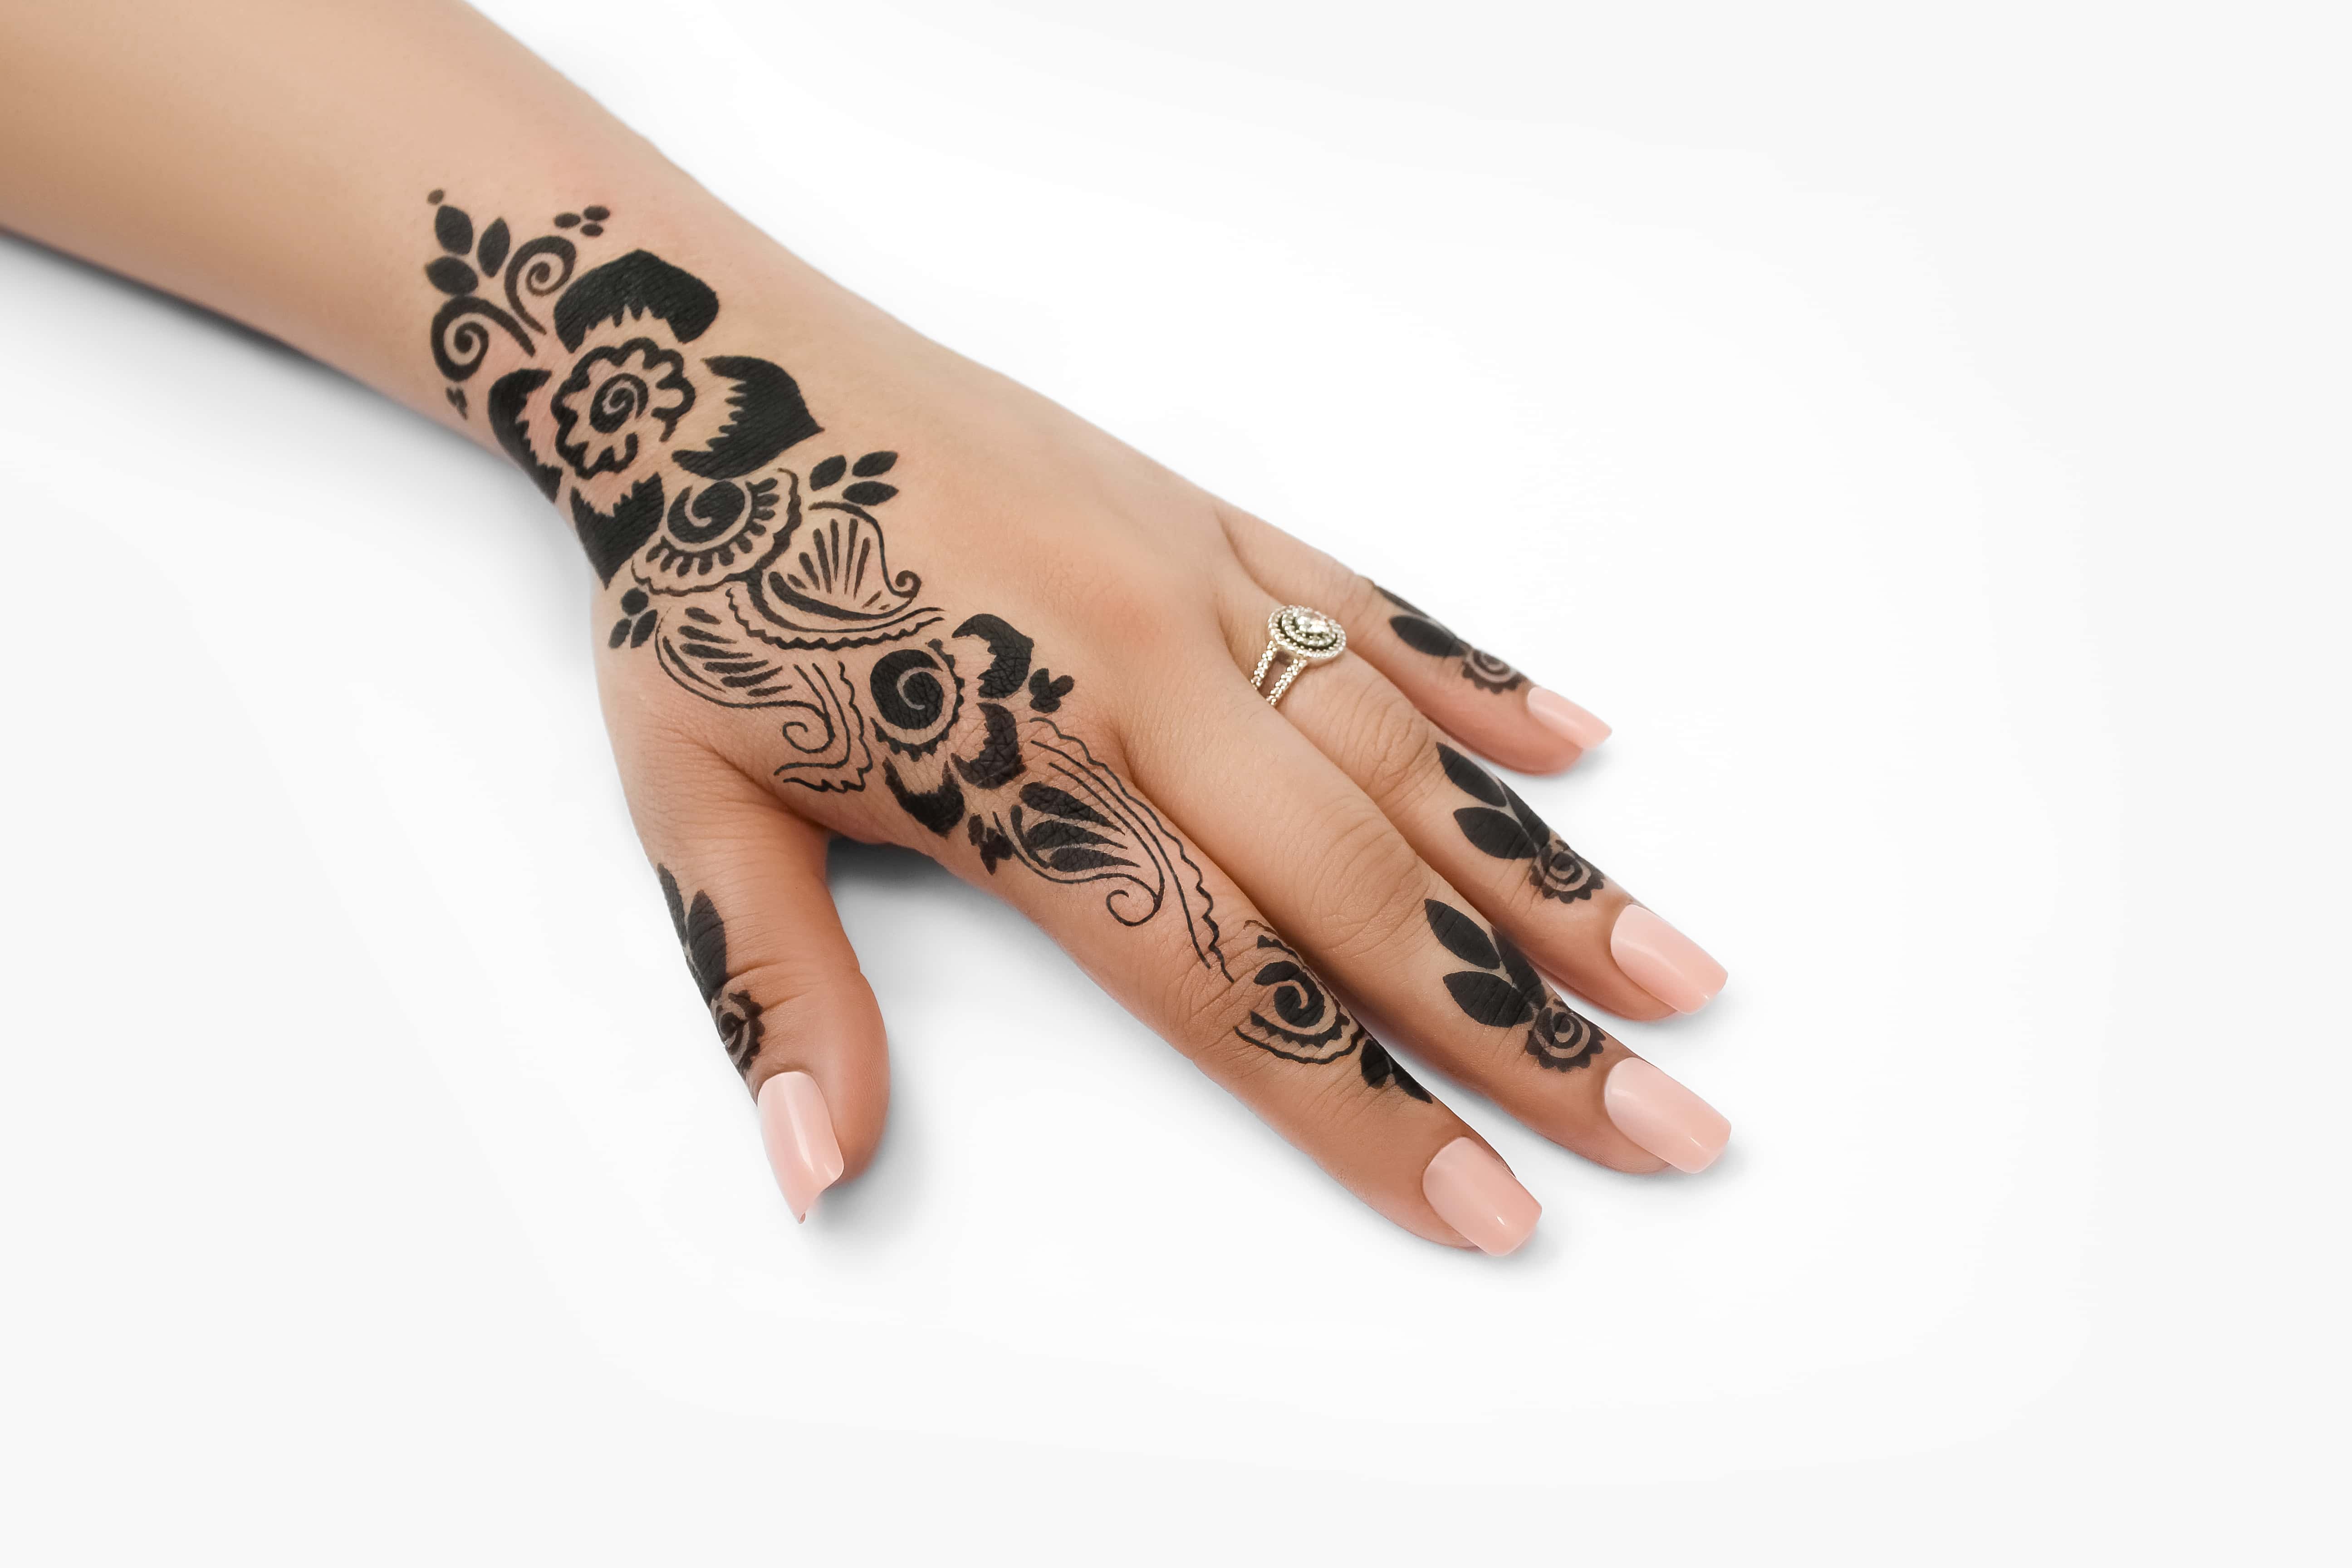 Henna Tattoos & Event Recap - By Sidney Eileen